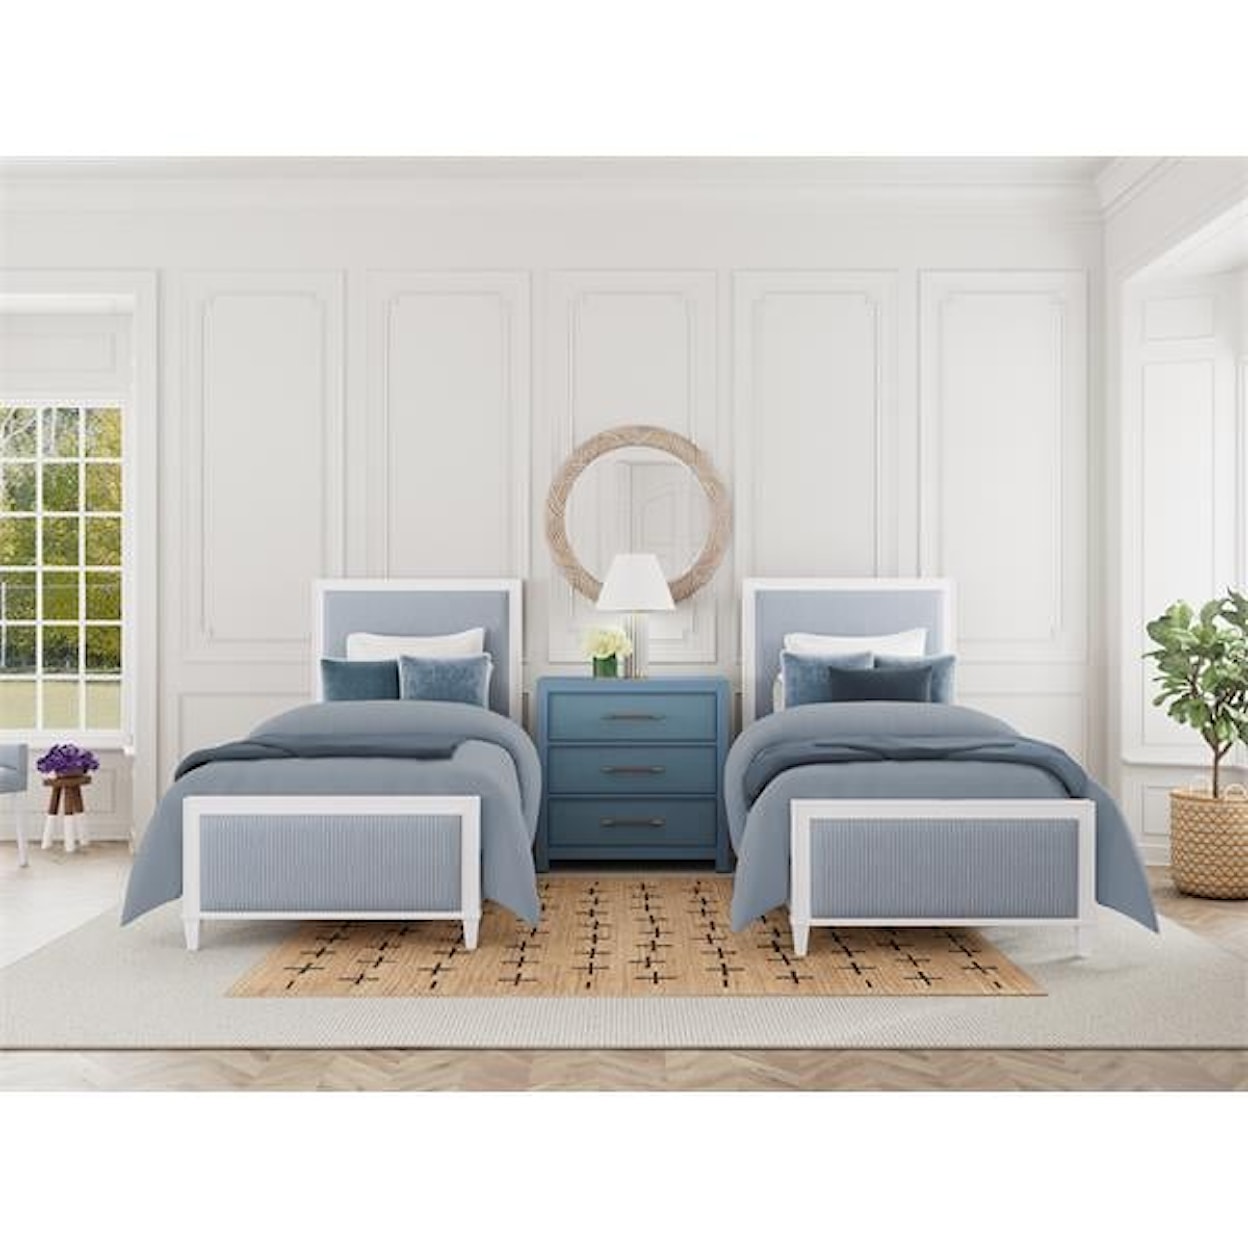 Riverside Furniture Rosalie Twin Upholstered Panel Bed